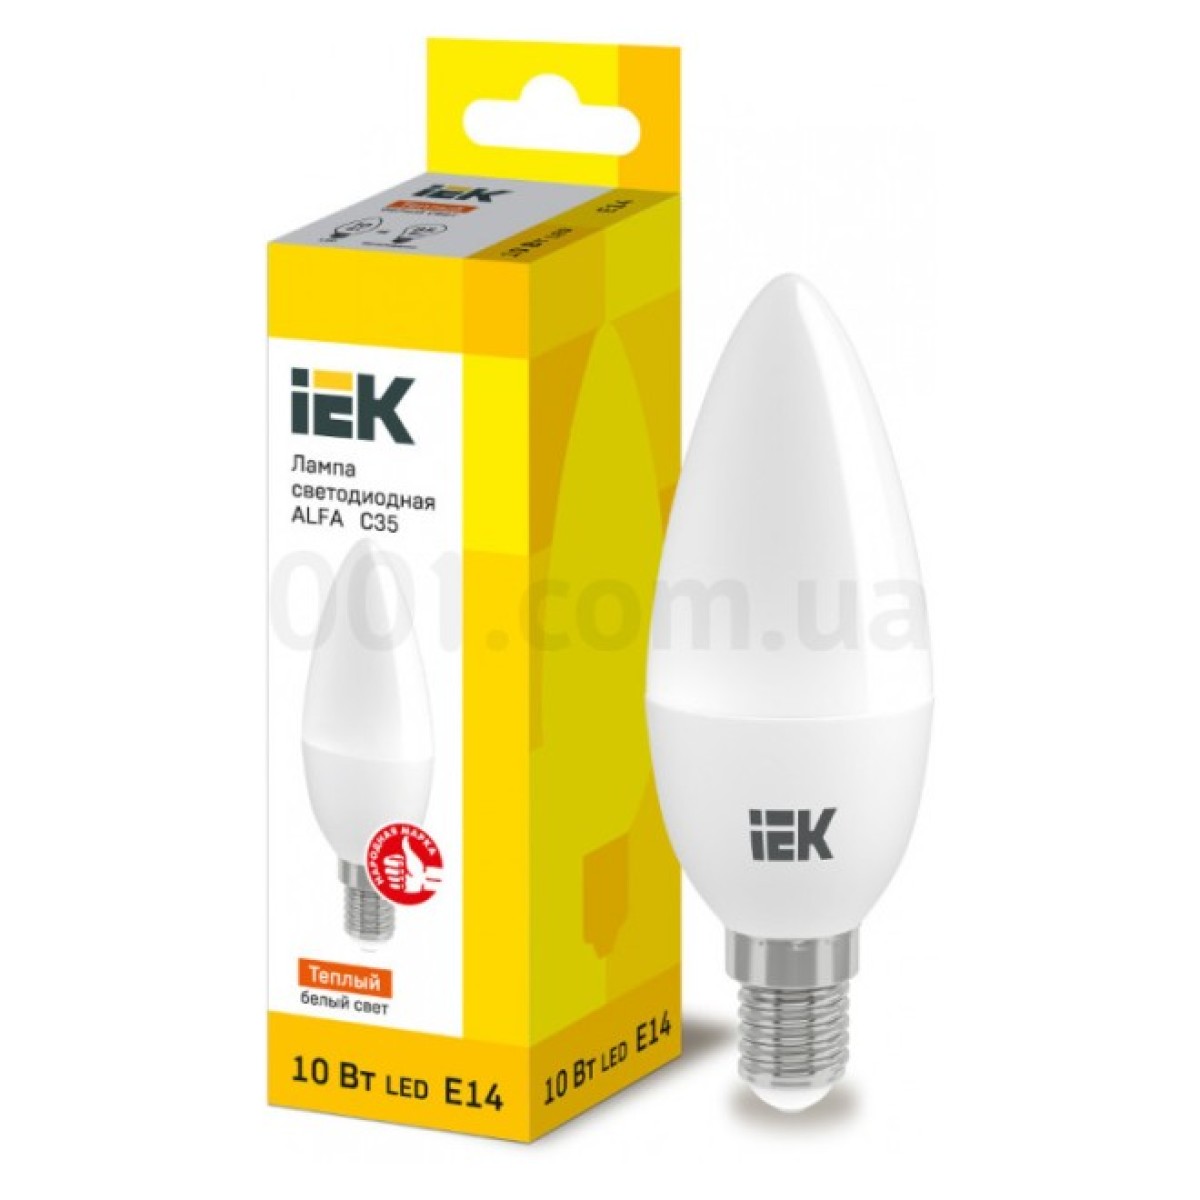 Світлодіодна лампа LED ALFA C35 (свічка) 10 Вт 230В 3000К E14, IEK 256_256.jpg